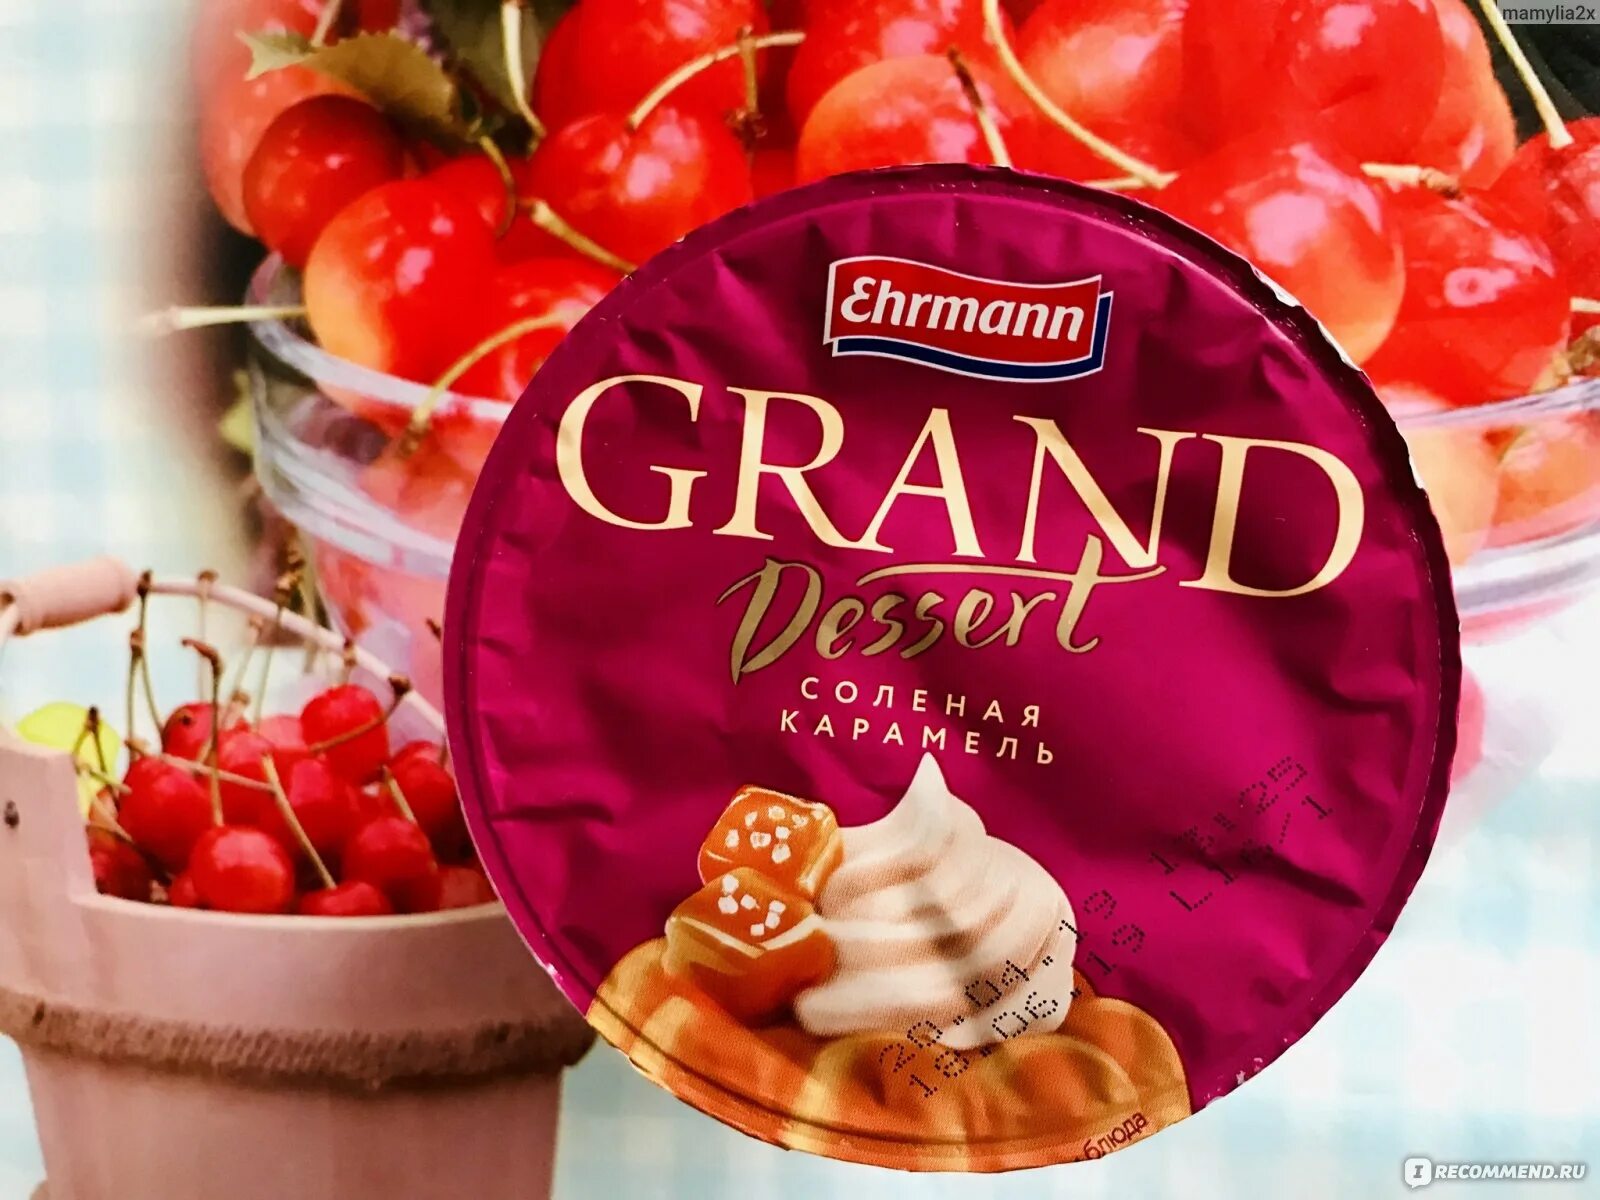 Пудинг Эрманн соленая карамель. Гранд десерт соленая карамель. Пудинг Гранд десерт карамель. Grand Desert пудинг вкусы. Вкус пудинга